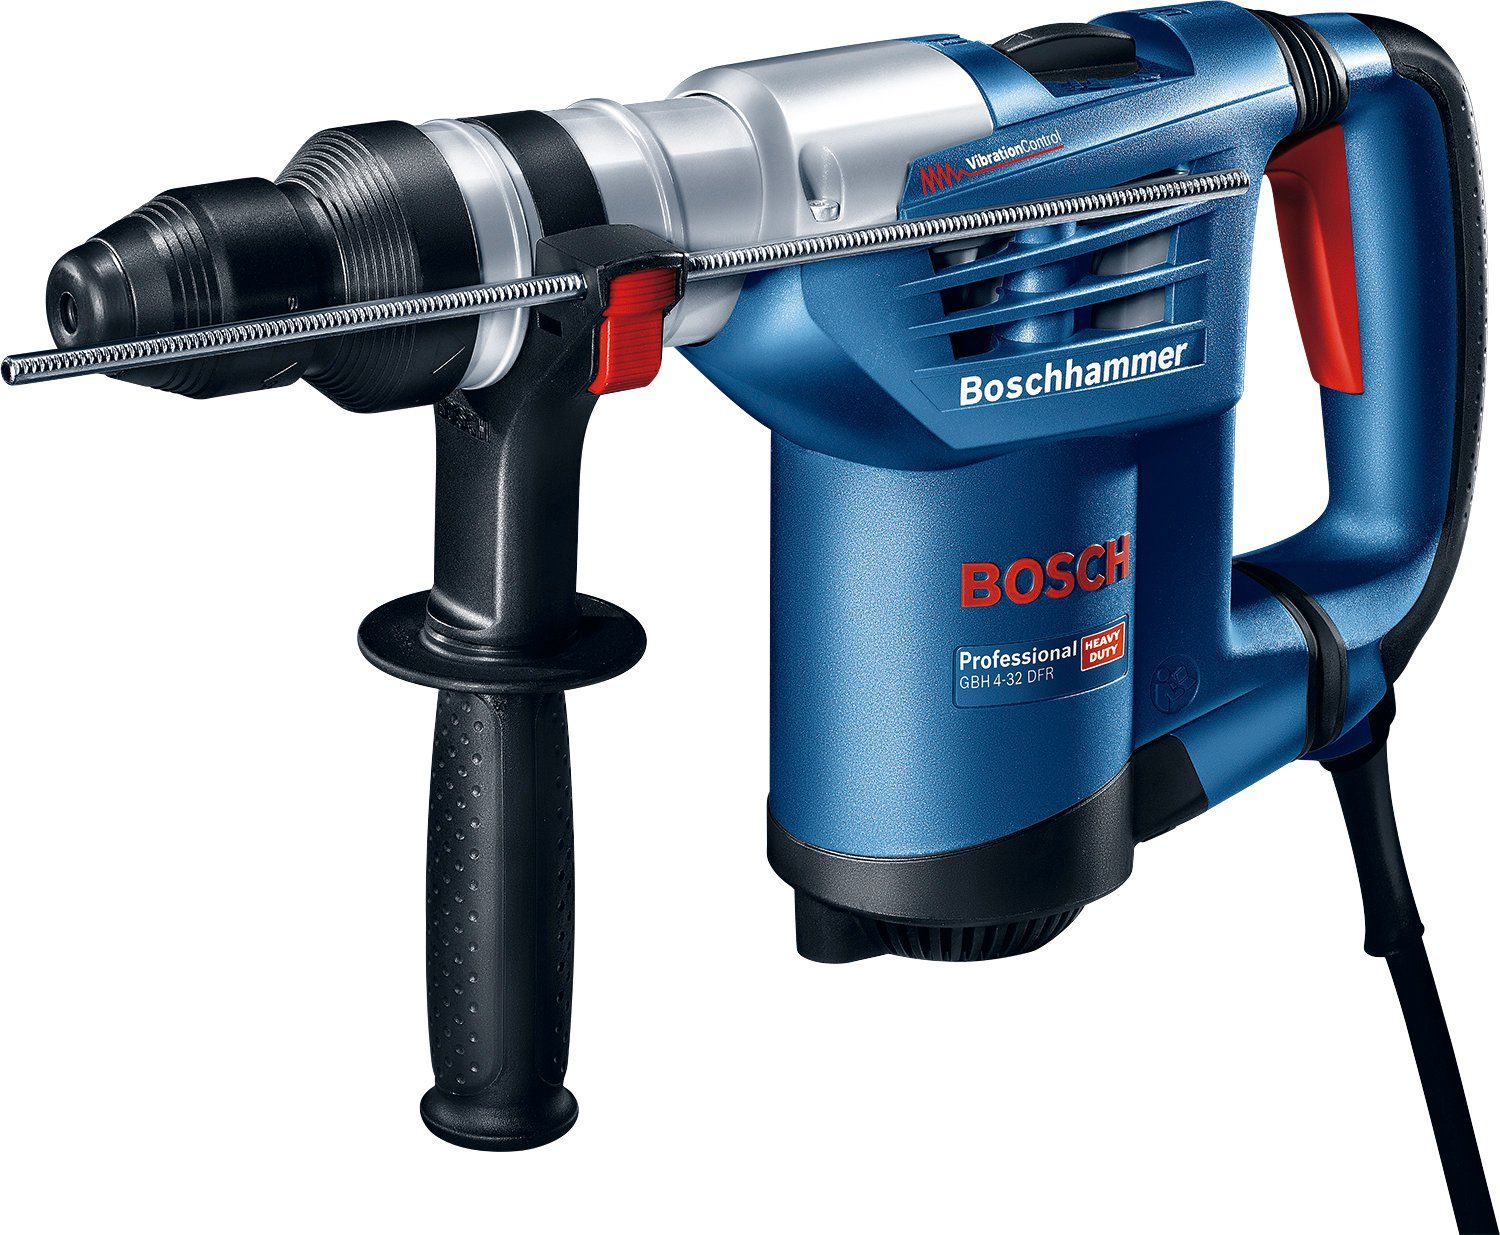 Bosch Professional Bohrhammer GBH 4-32 Schnellspannbohrfutter, Handwerkkoffer 3600 U/min, mit DFR, max